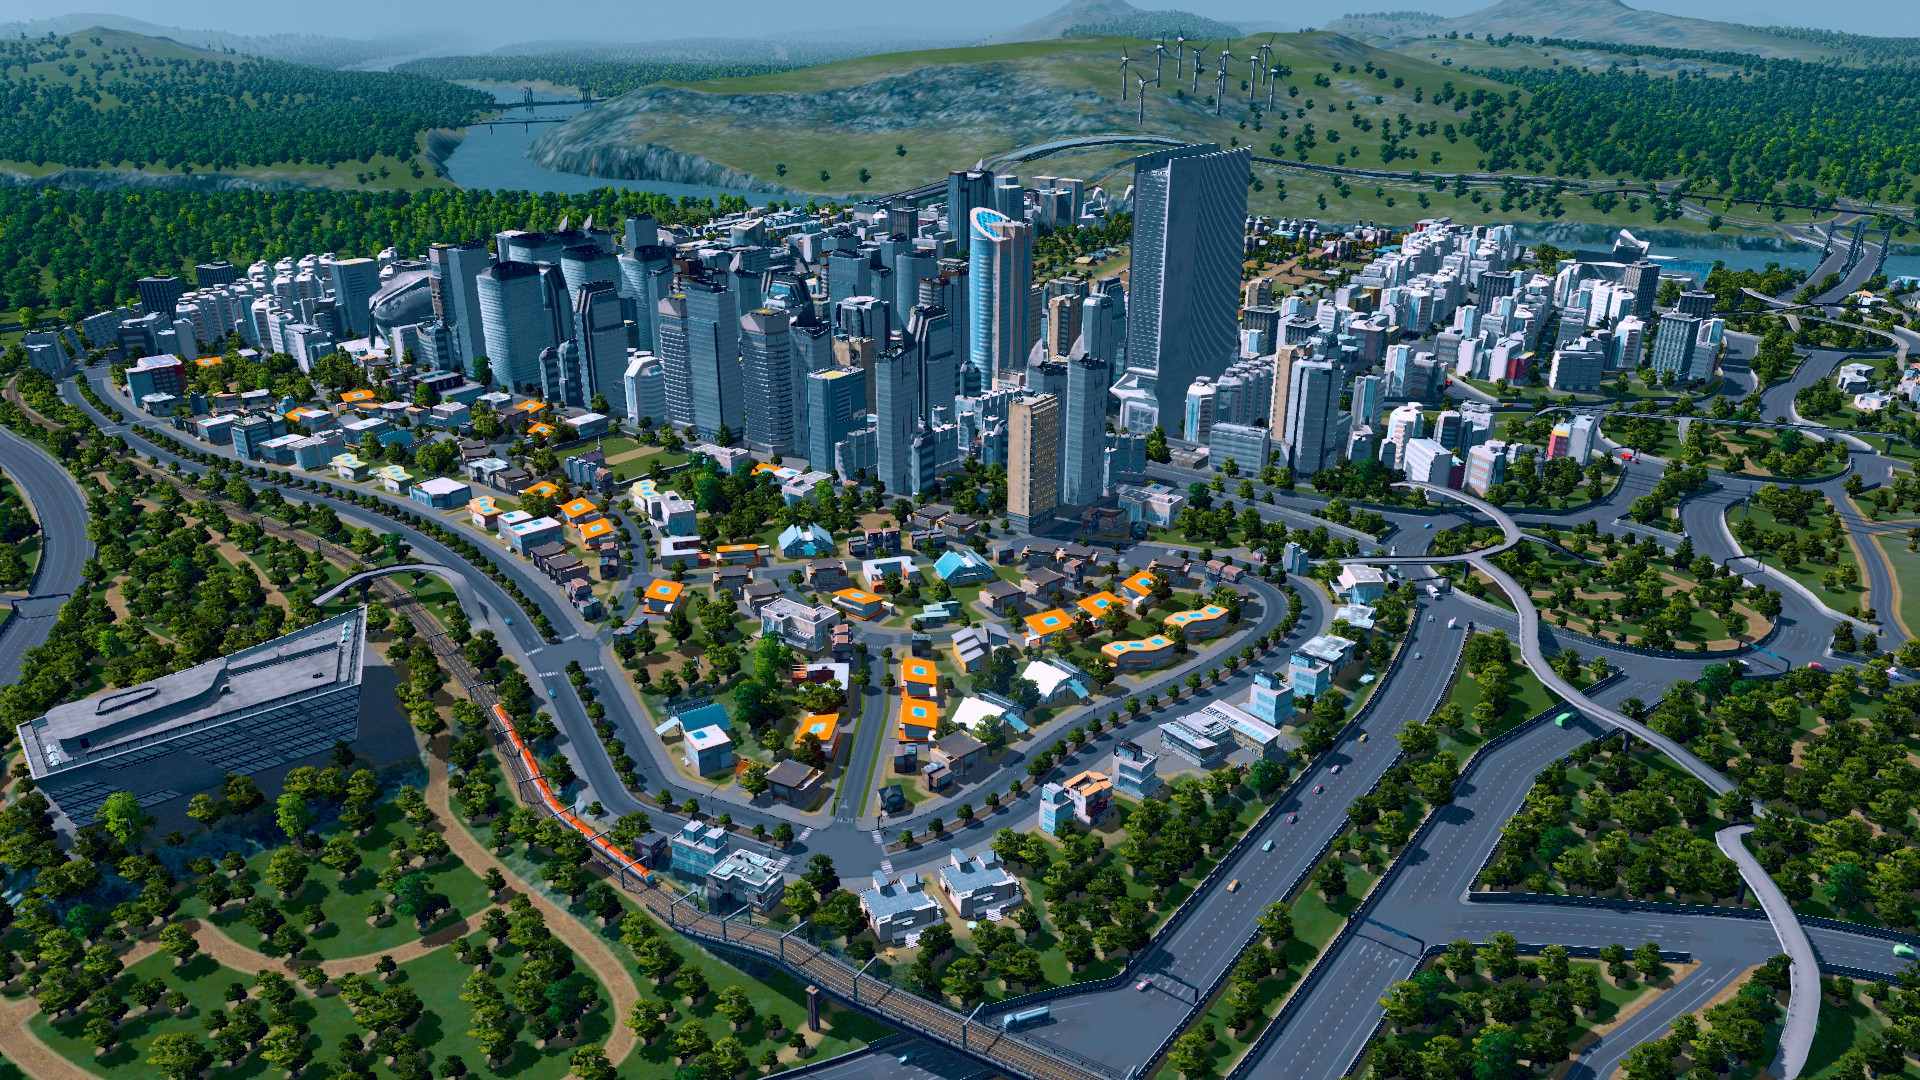 rendered imagepack free cities